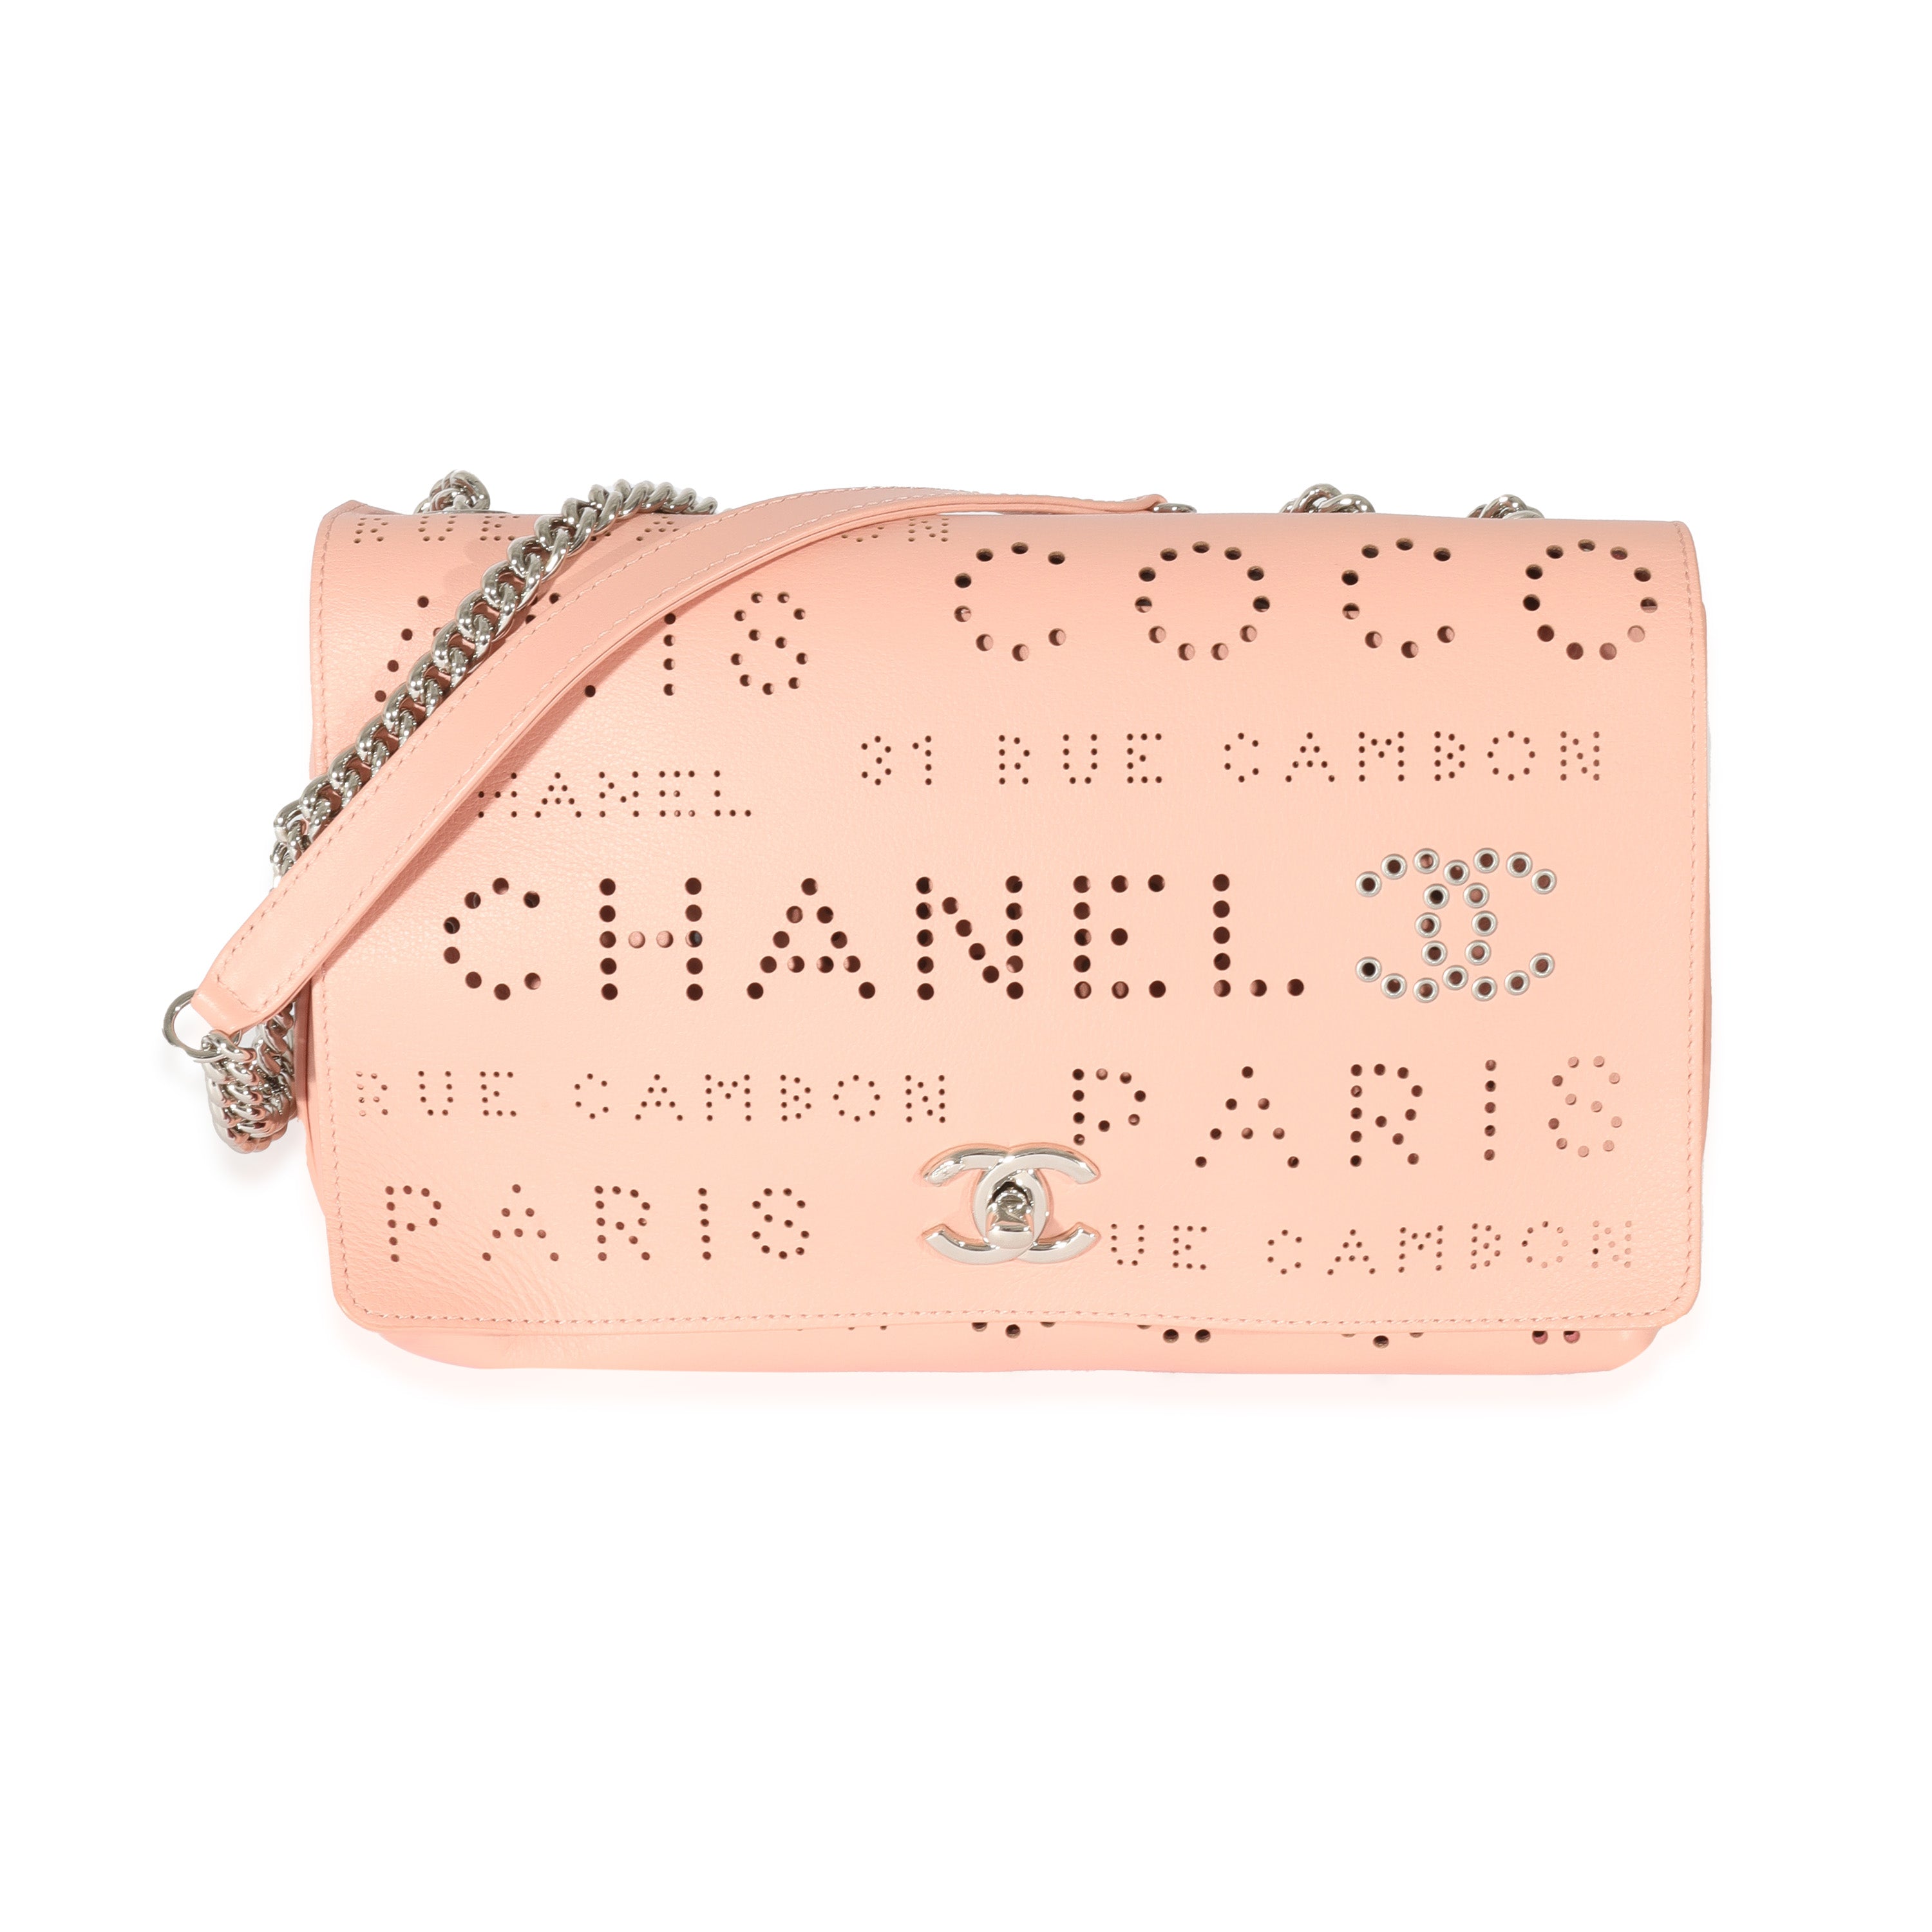 Chanel Beige Calfskin Coco Eyelet Round Flap Bag, myGemma